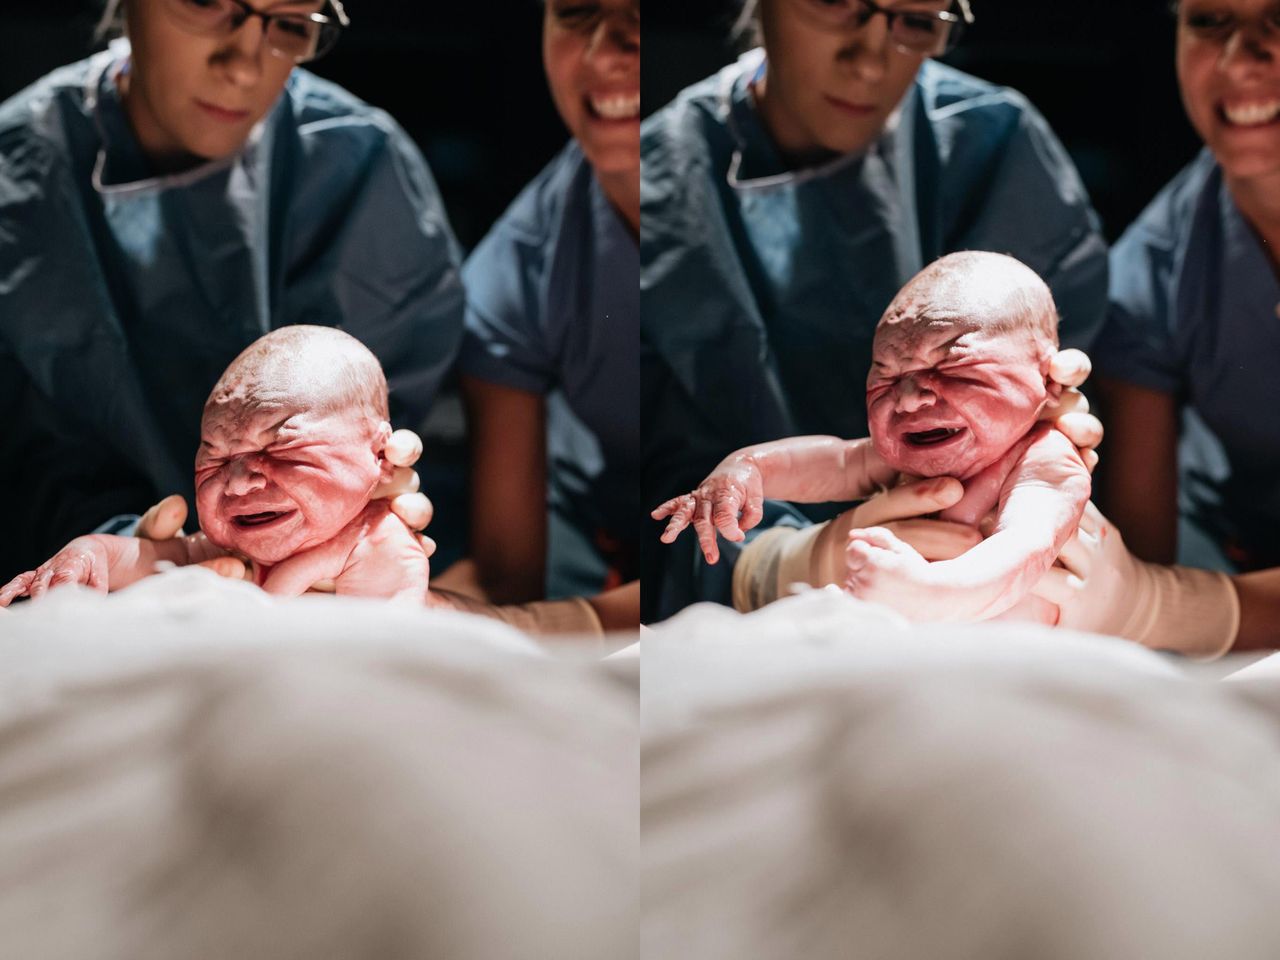 Kobieta ujęła pierwszy oddech i spojrzenie synka podczas porodu